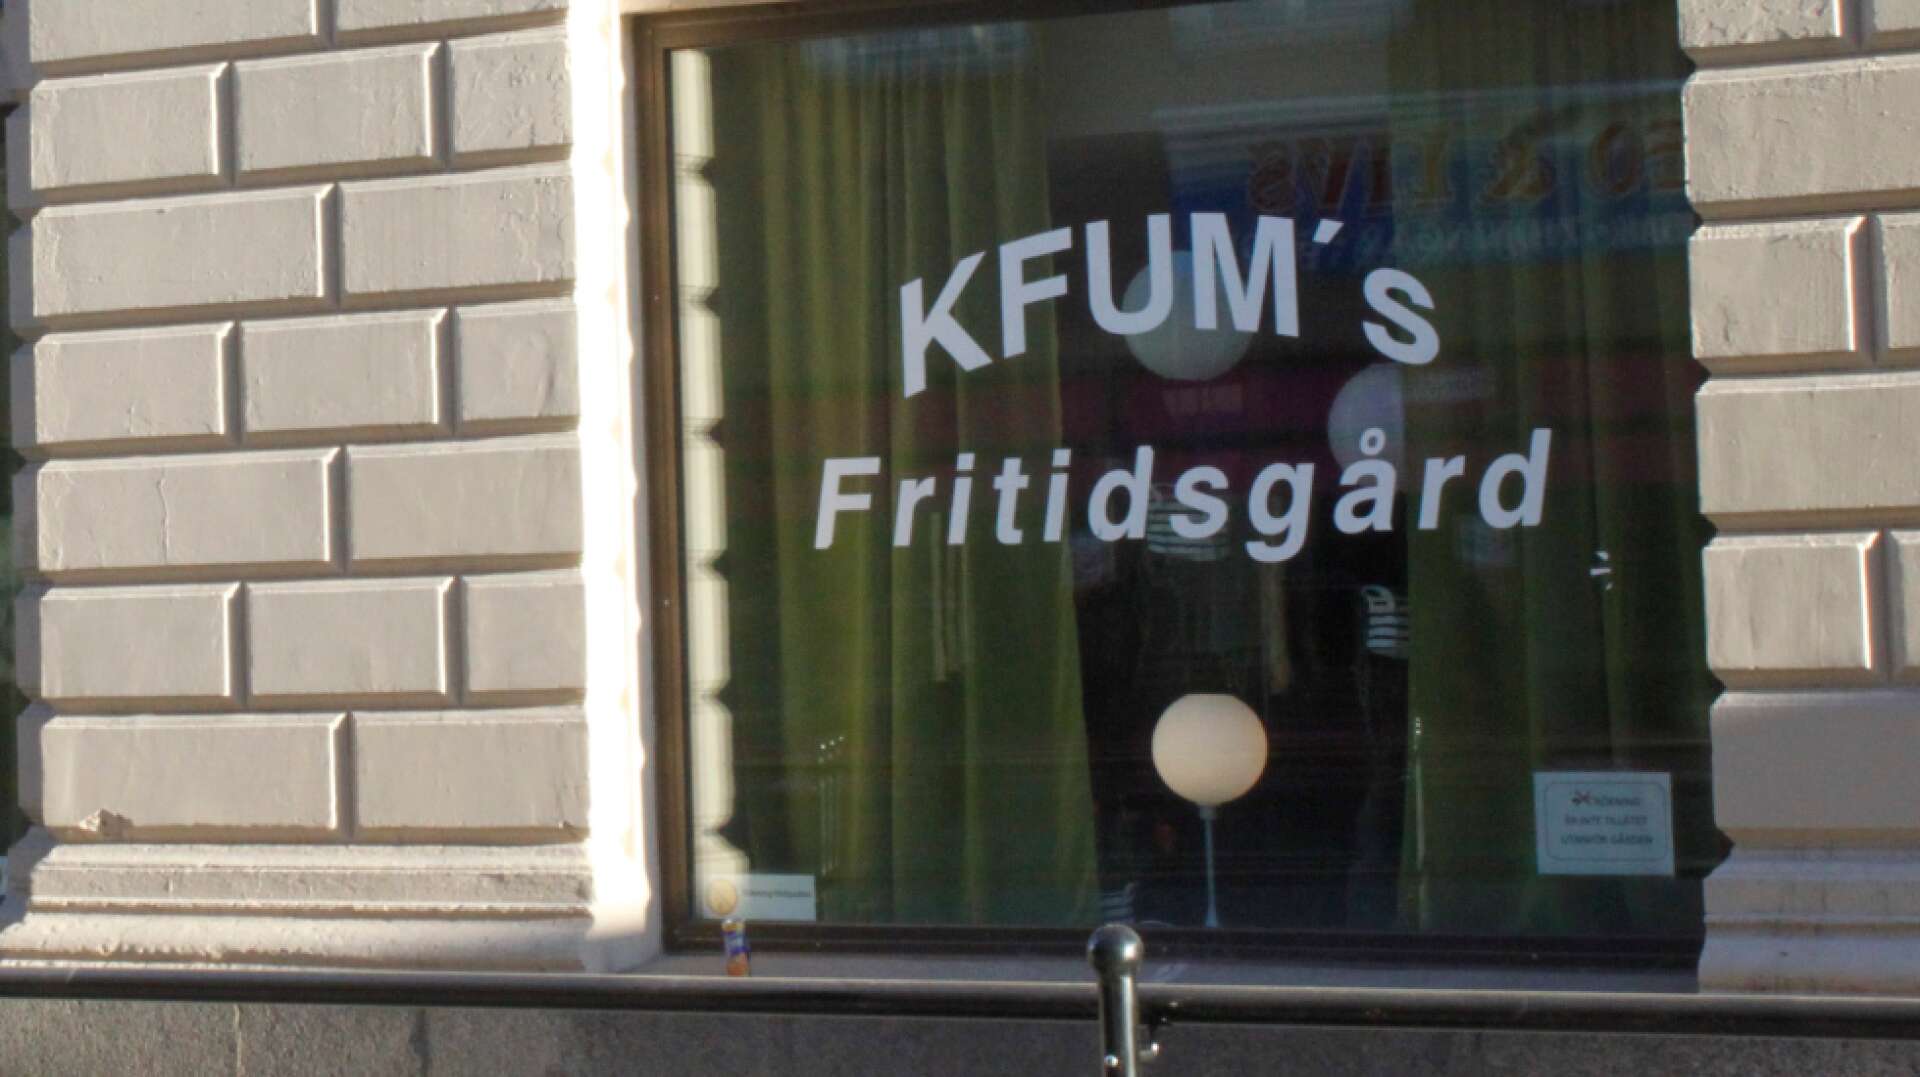 KFUM:s fritidsgård i Kristinehamn.